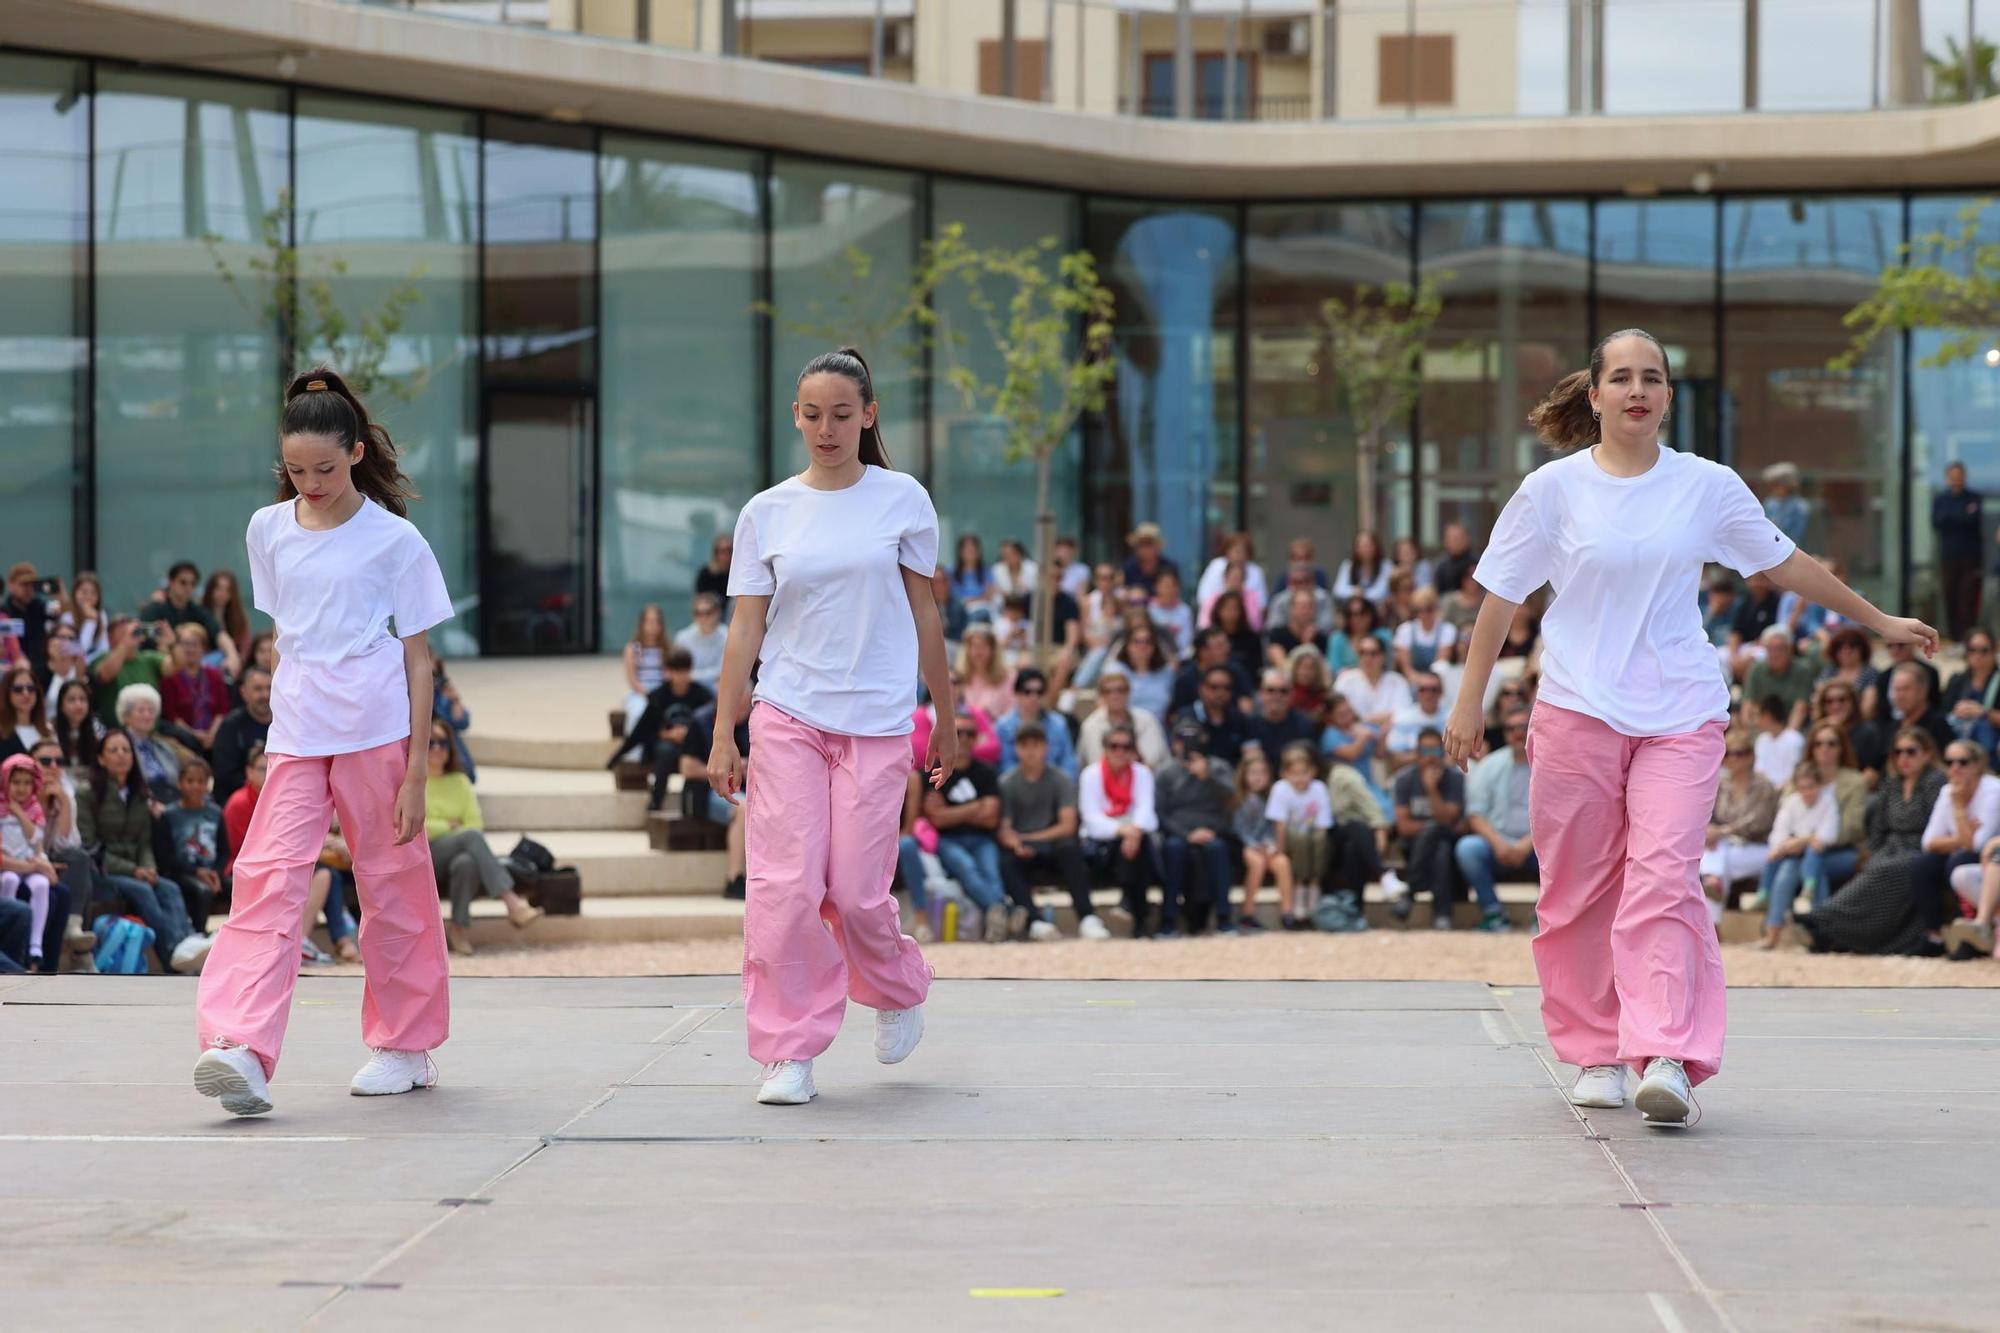 Galería: Día internacional de la Danza en Caló de s'Oli